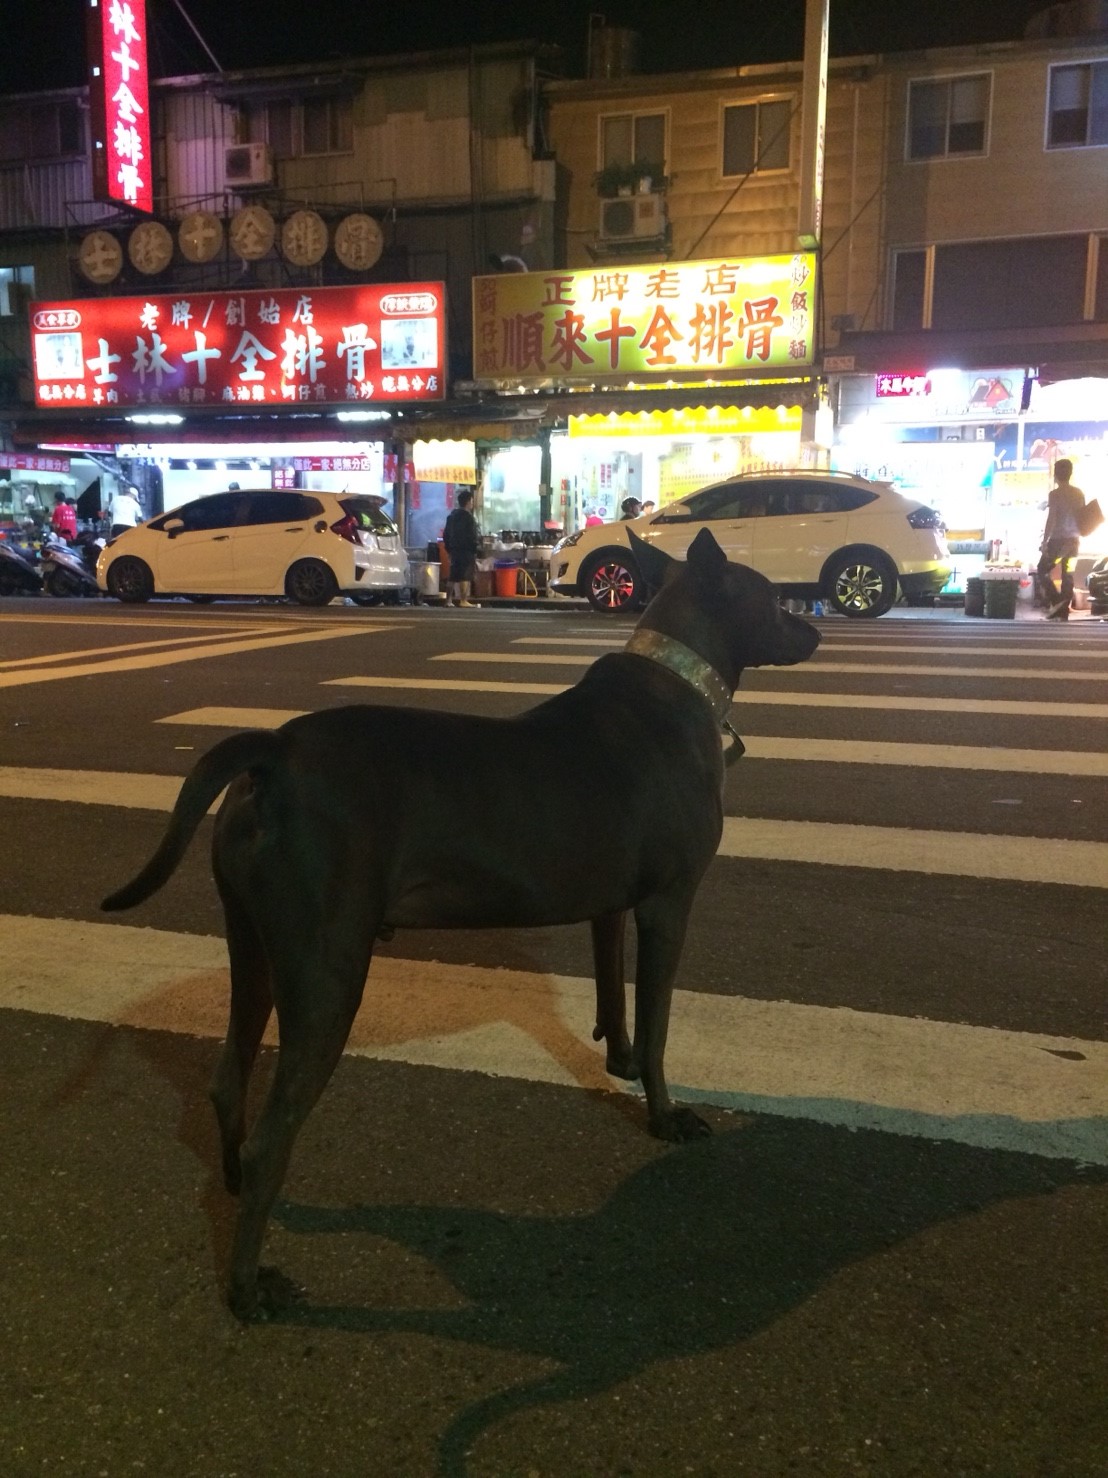 かっこいい犬in台湾 無料写真 フリー素材のダウンロードサイト もある